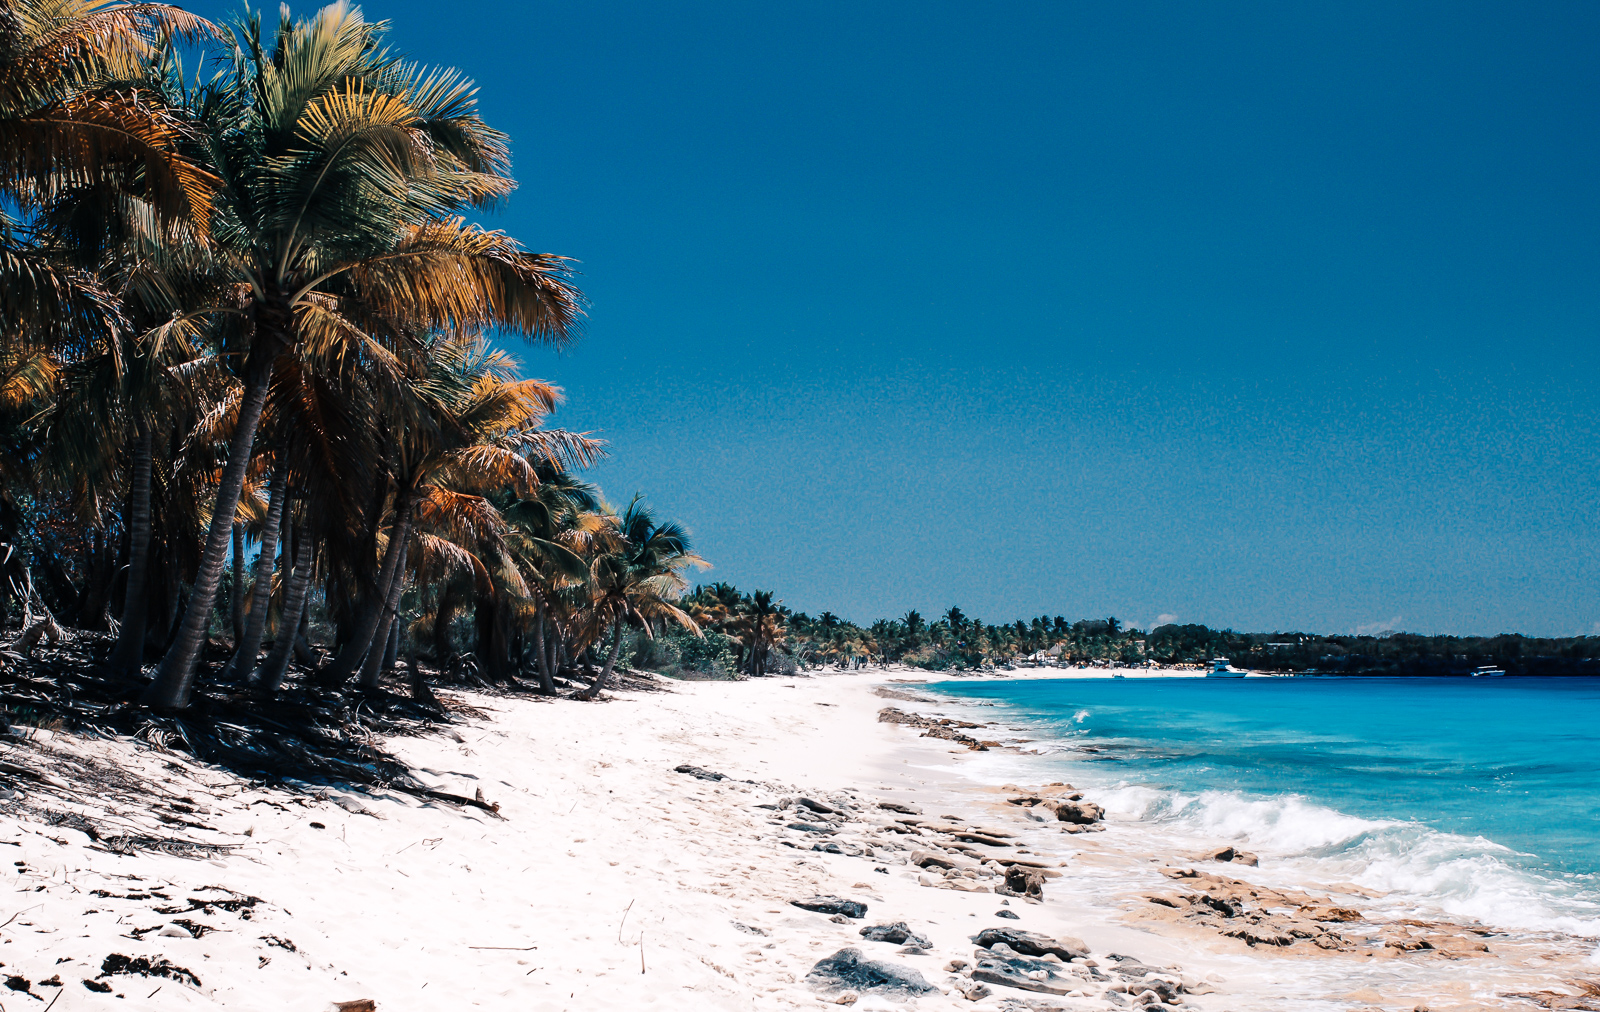 Dominikanische Republik - Travel Guide - Reisebericht - Wissenswertes für deine Karibik Reise - Tipps für deine Reise - Reisetipps Dom Rep. - Fashionladyloves by Tamara Wagner - Travel Blog - Reiseblog 